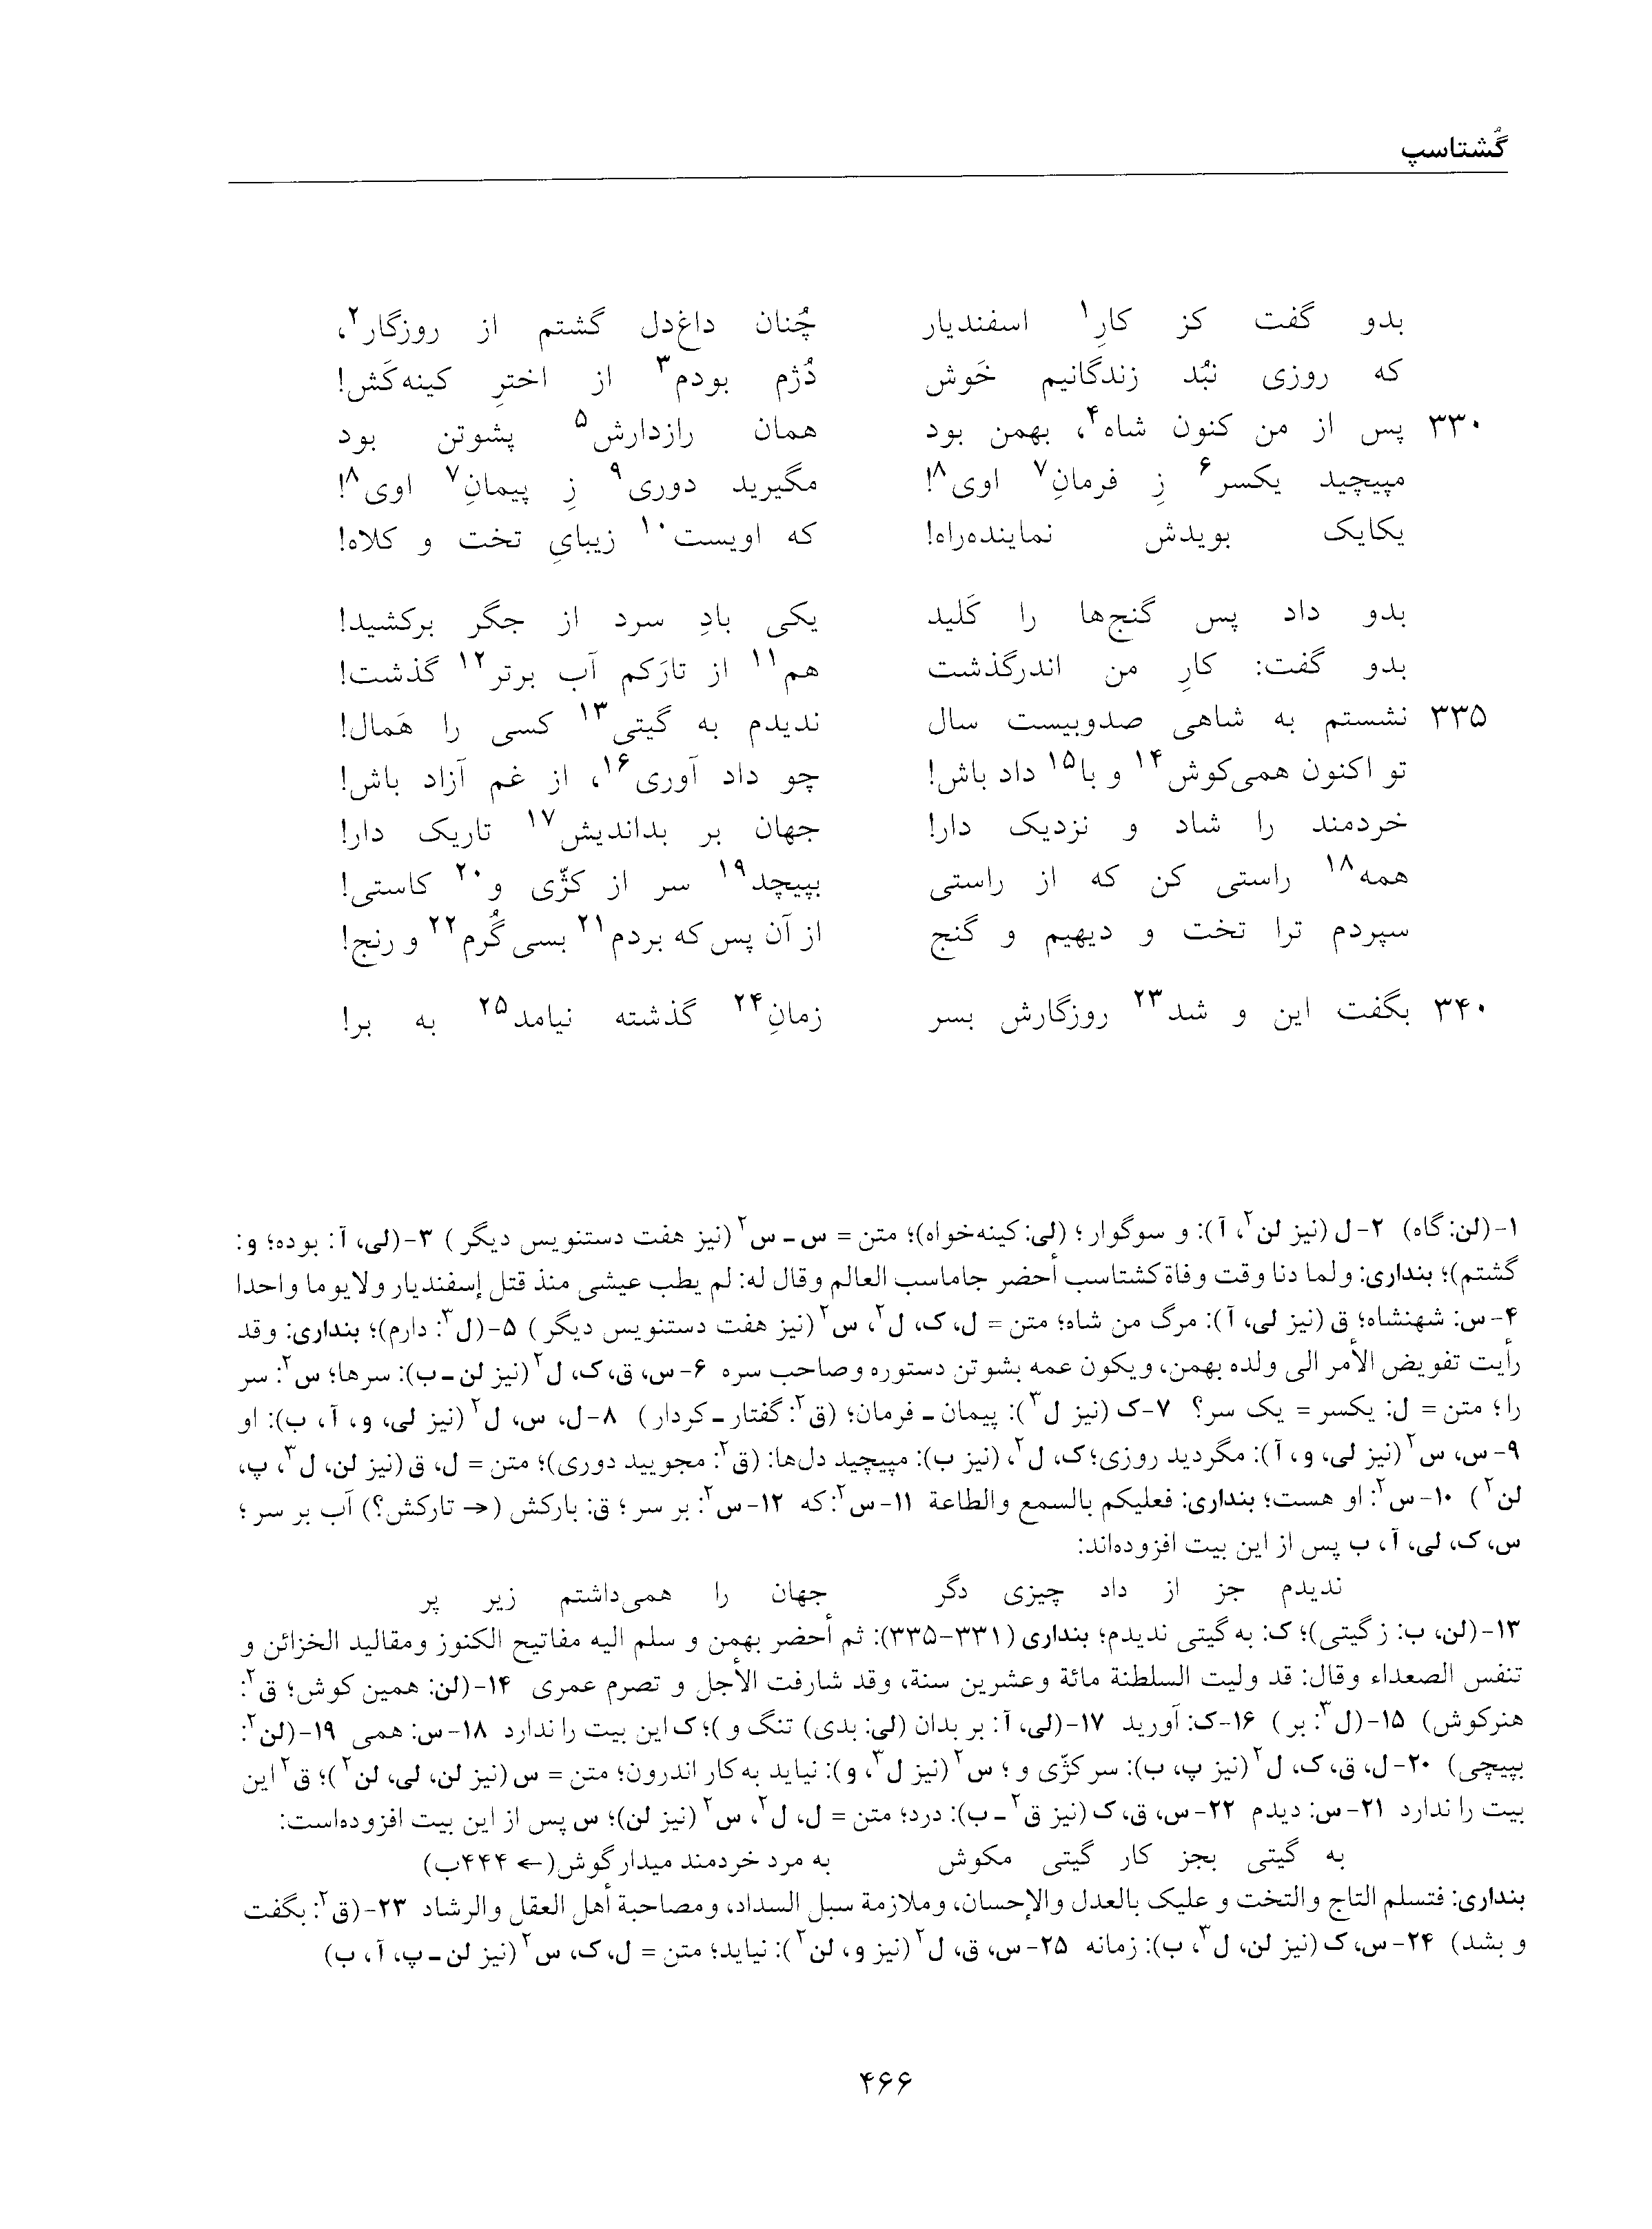 vol. 5, p. 466